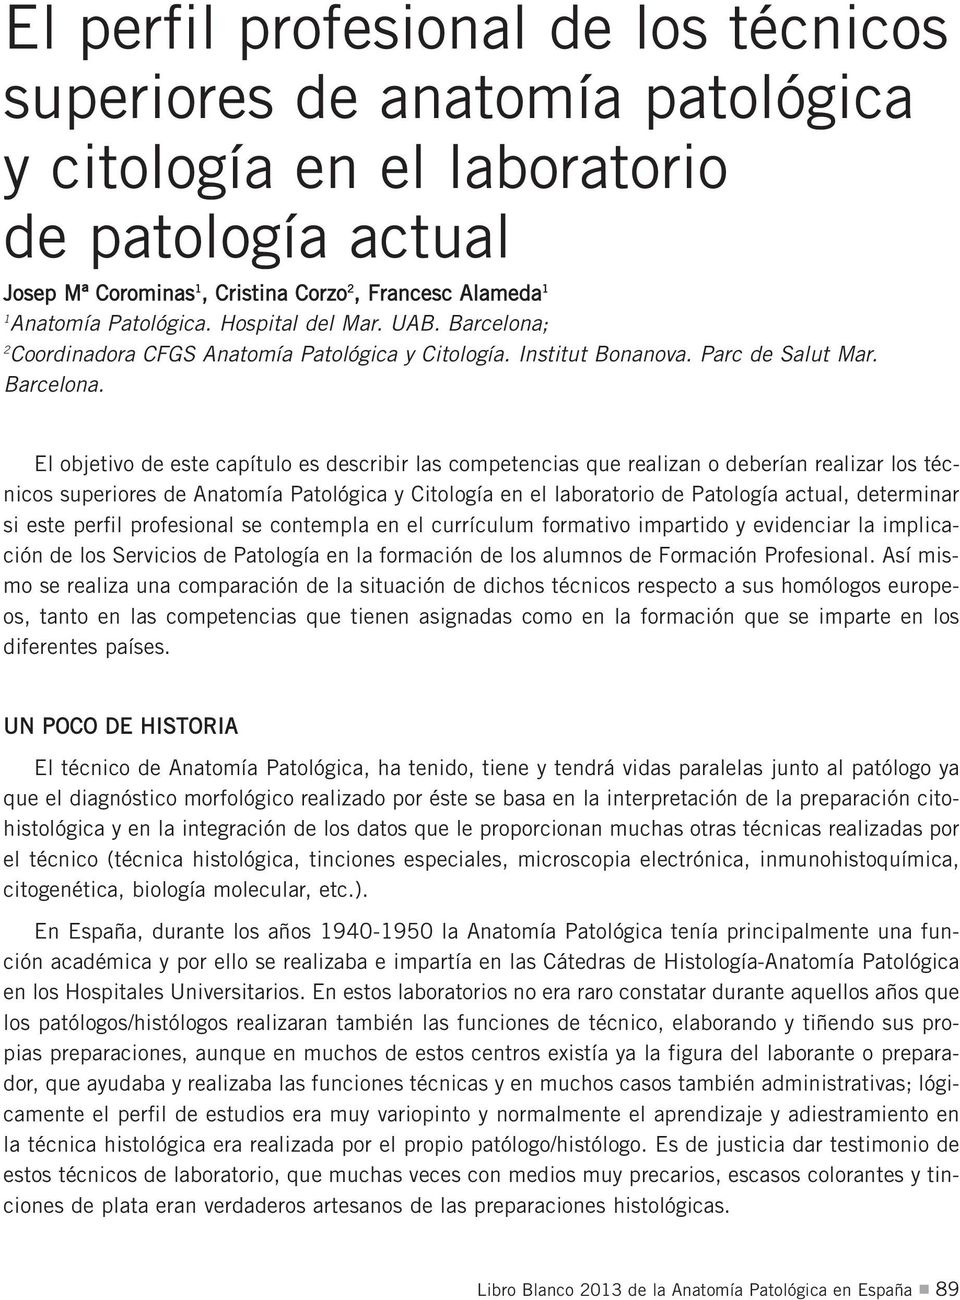 2 Coordinadora CFGS Anatomía Patológica y Citología. Institut Bonanova. Parc de Salut Mar. Barcelona.